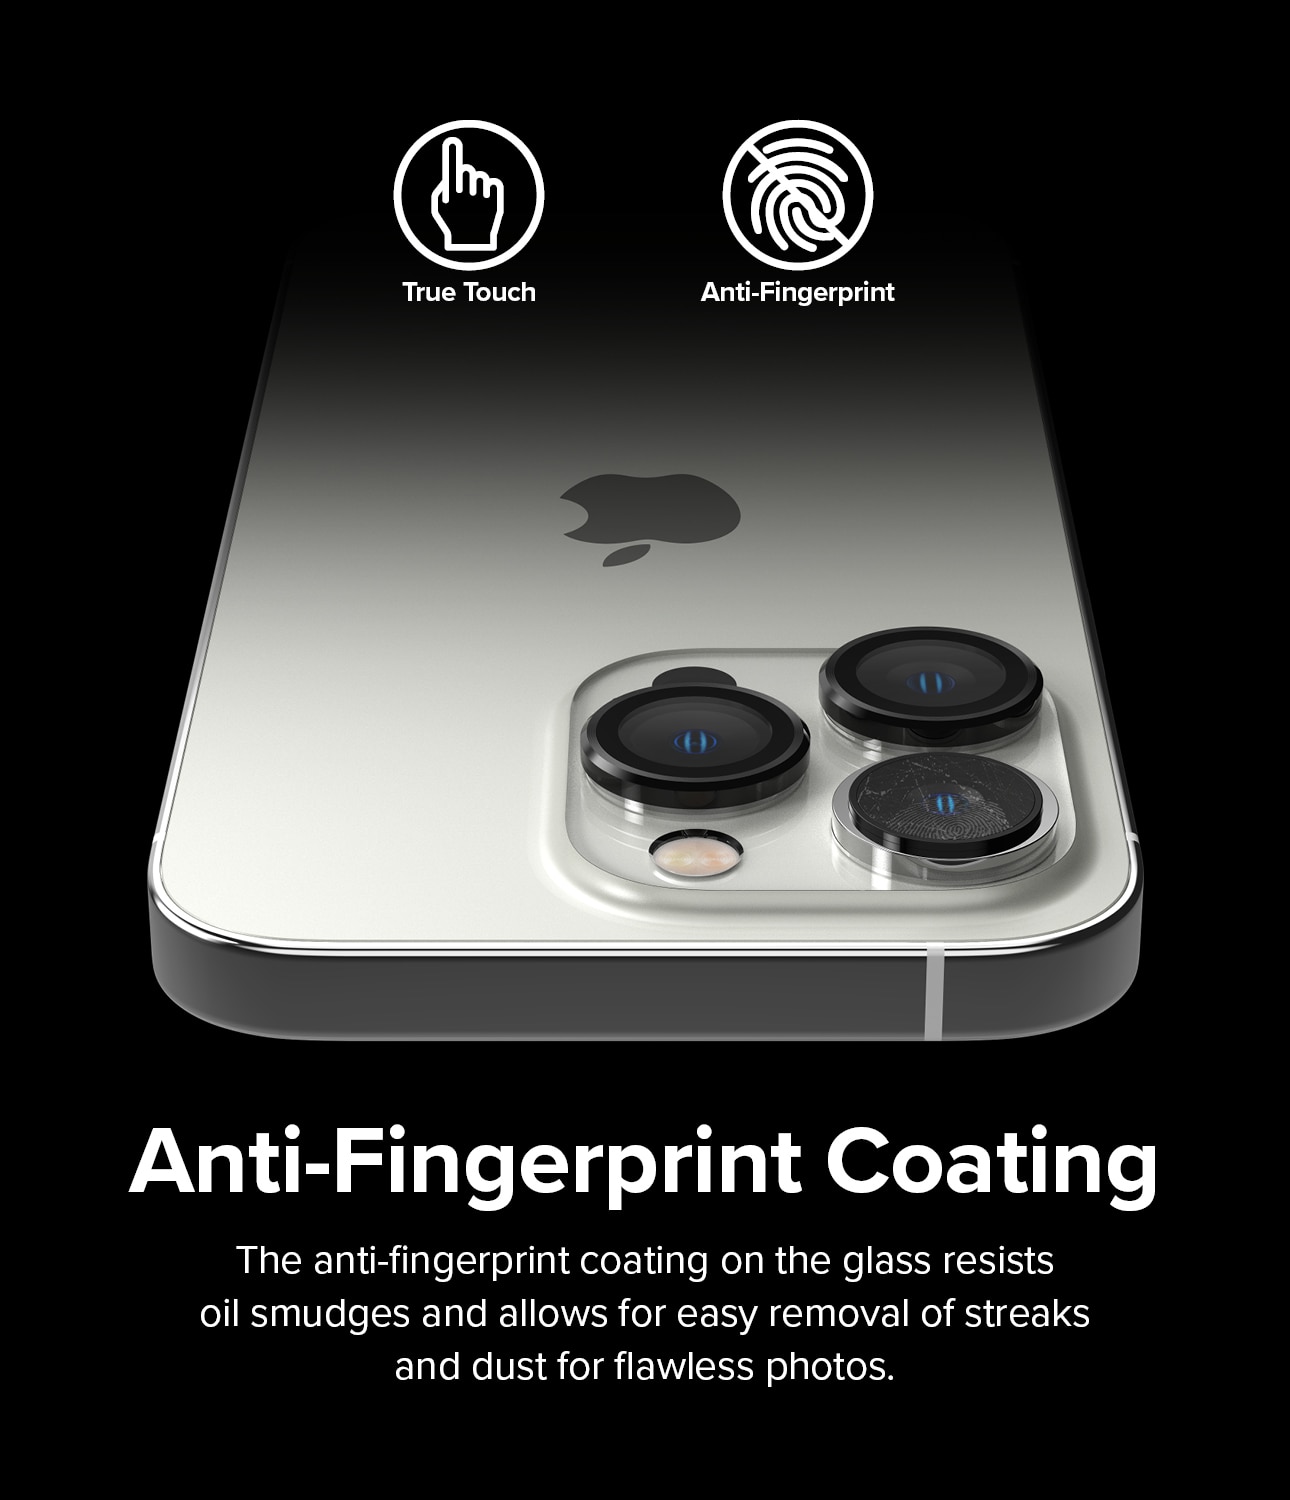 iPhone 14 Pro Linsskydd med aluminiumram, svart